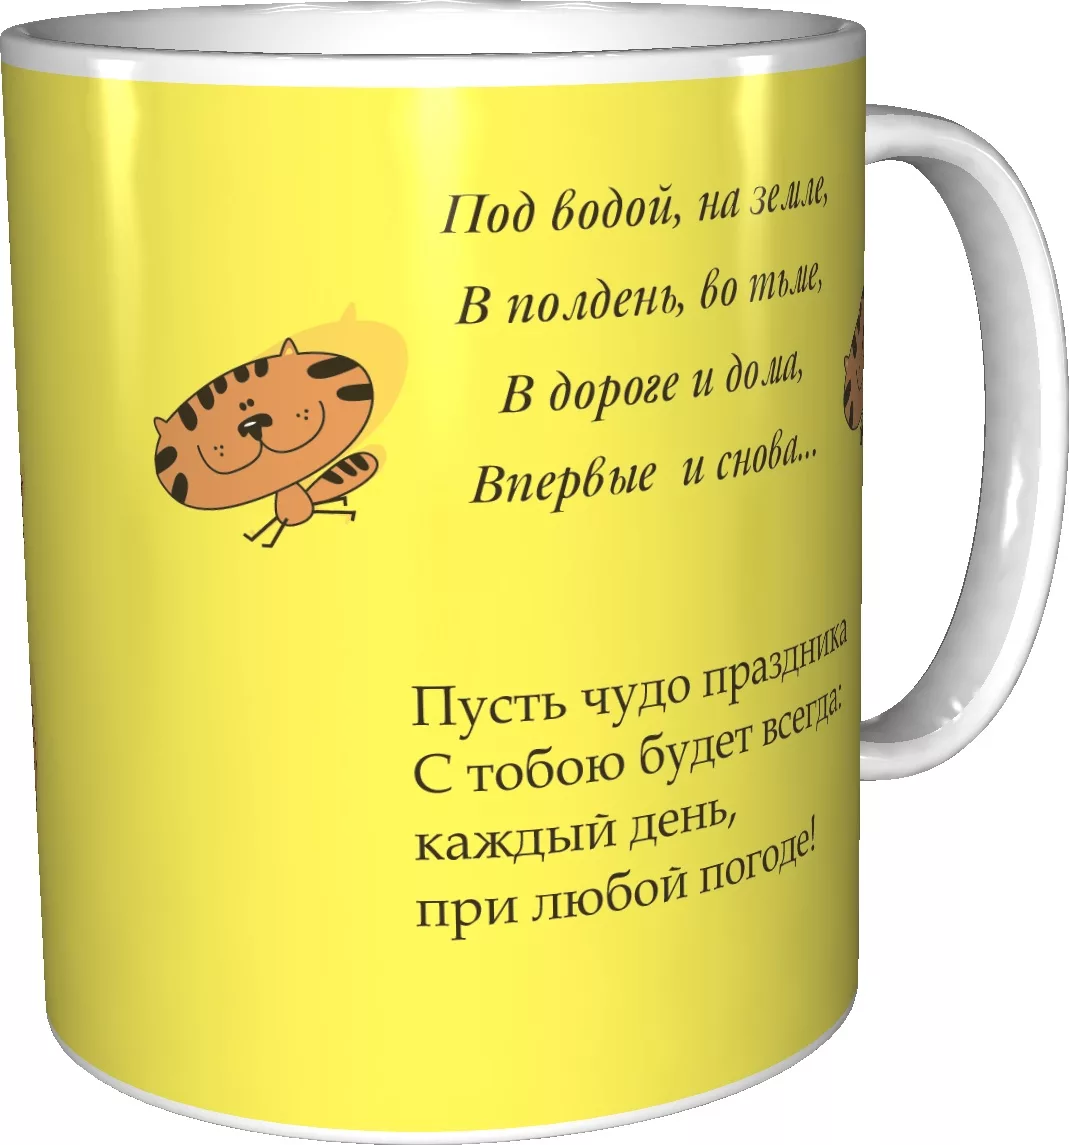 Фото Words for a mug gift #11